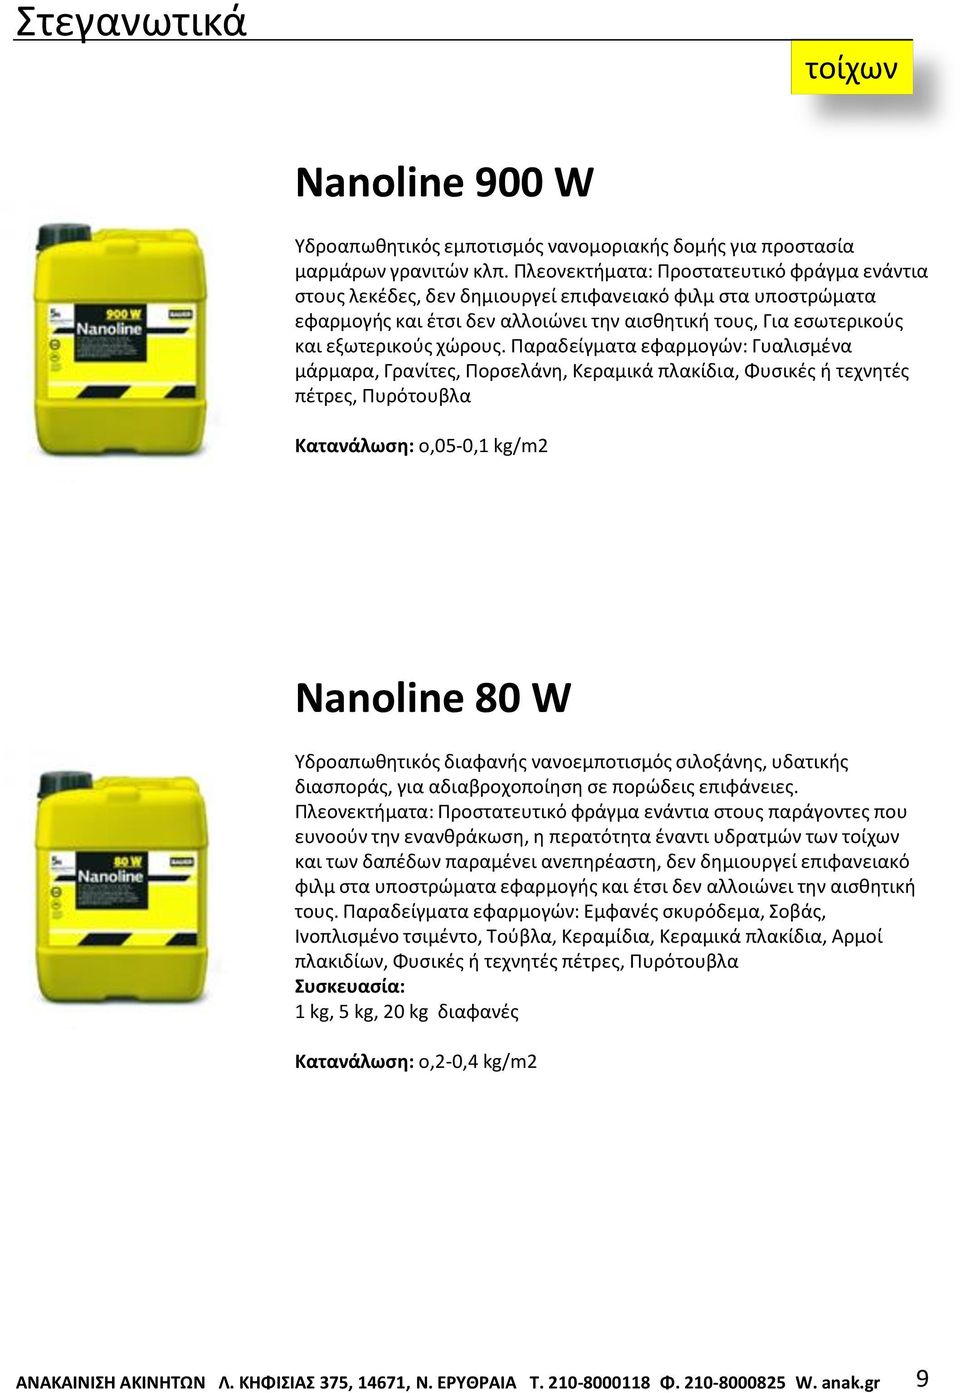 Παραδείγματα εφαρμογών: Γυαλισμένα μάρμαρα, Γρανίτες, Πορσελάνη, Κεραμικά πλακίδια, Φυσικές ή τεχνητές πέτρες, Πυρότουβλα Κατανάλωση: o,05-0,1 kg/m2 Nanoline 80 W Υδροαπωθητικός διαφανής